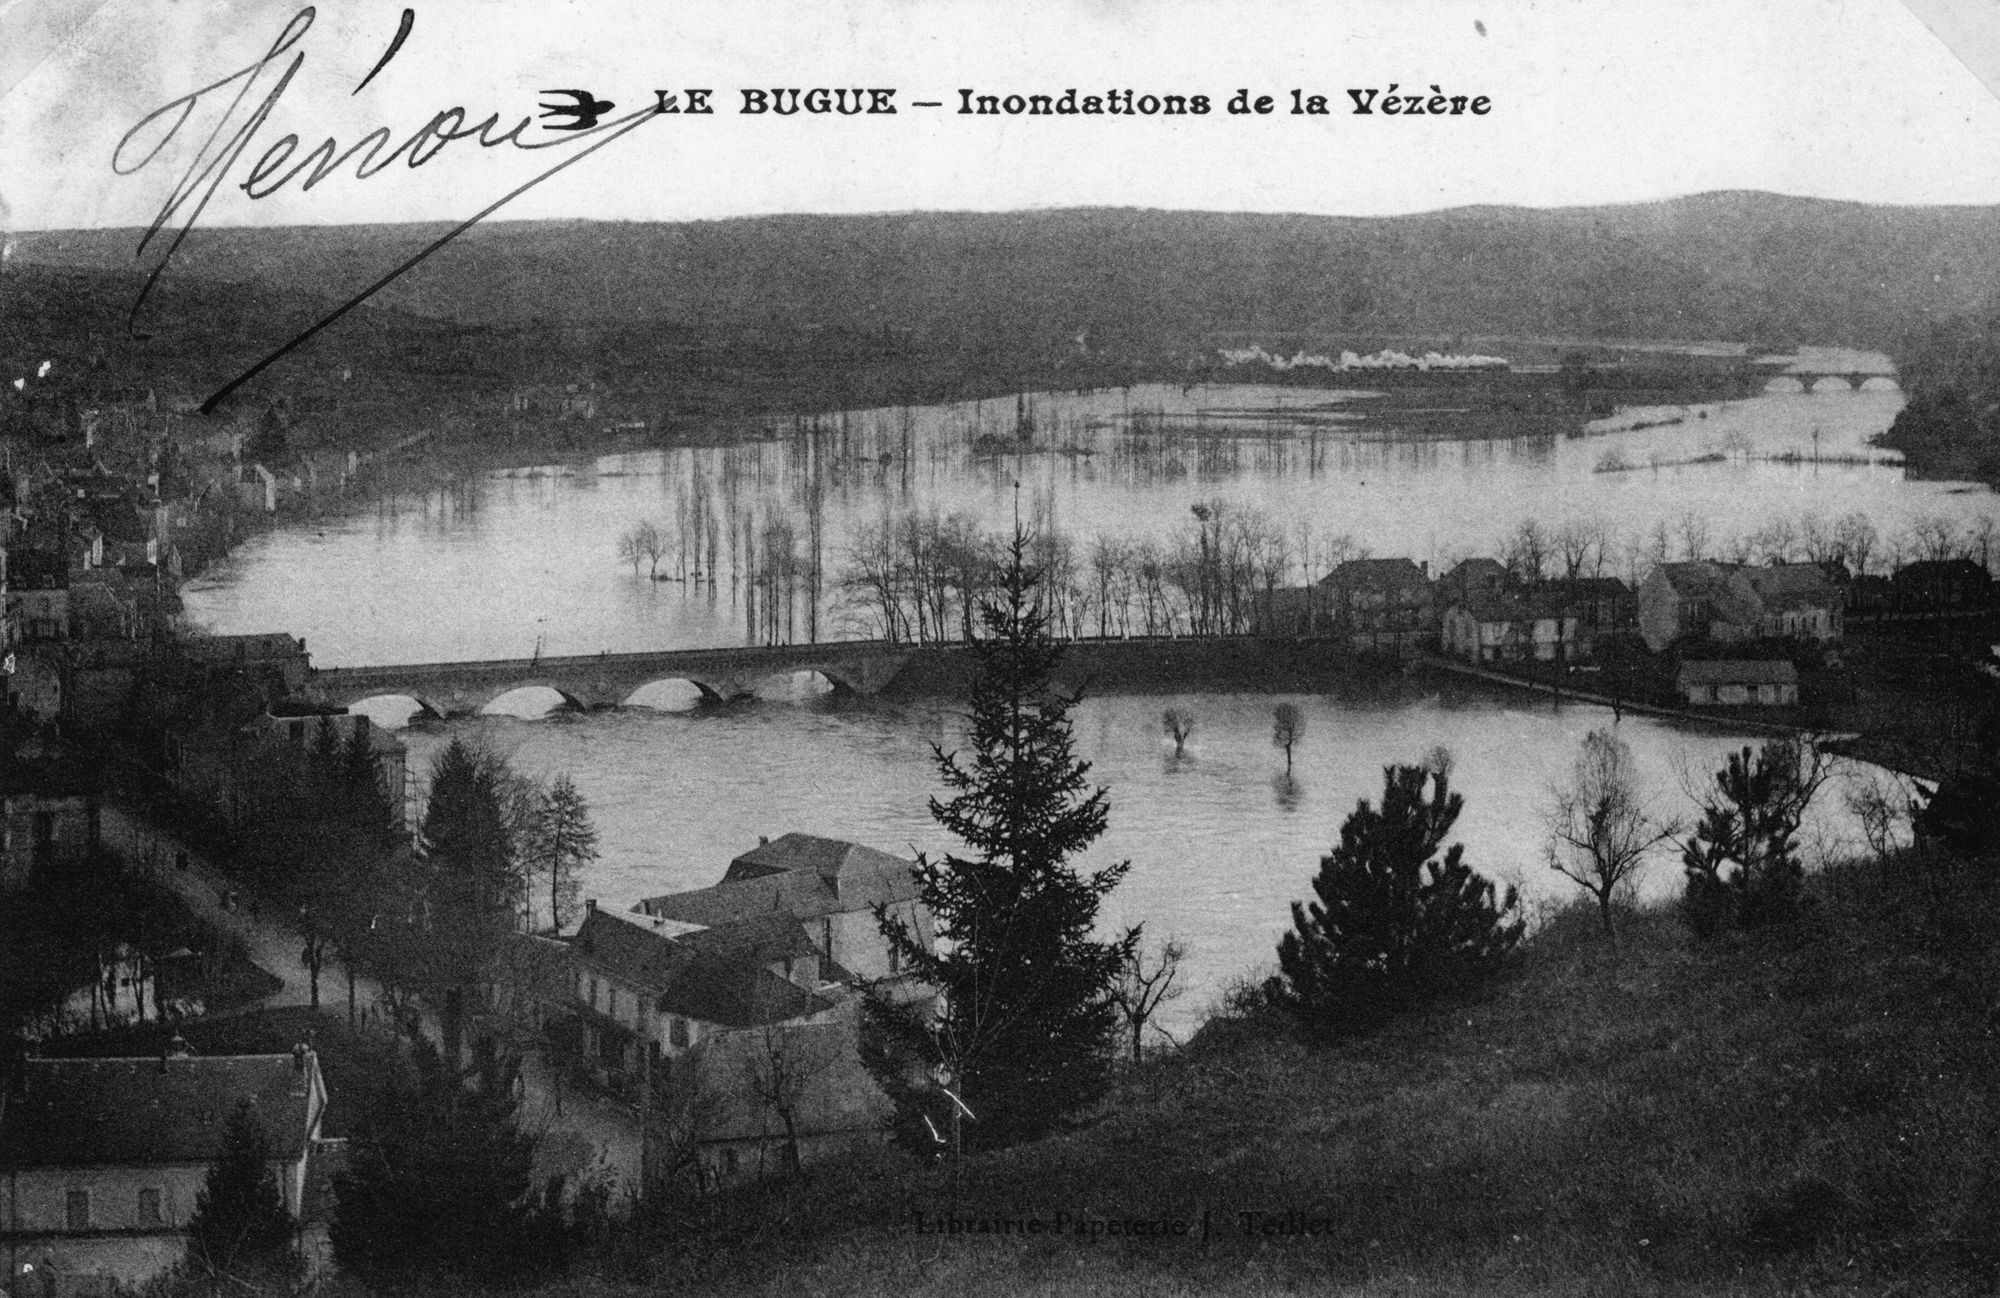 LE BUGUE – Inondations des Quais par la Vézère
Postcard – Librairie Papeterie – Teillet